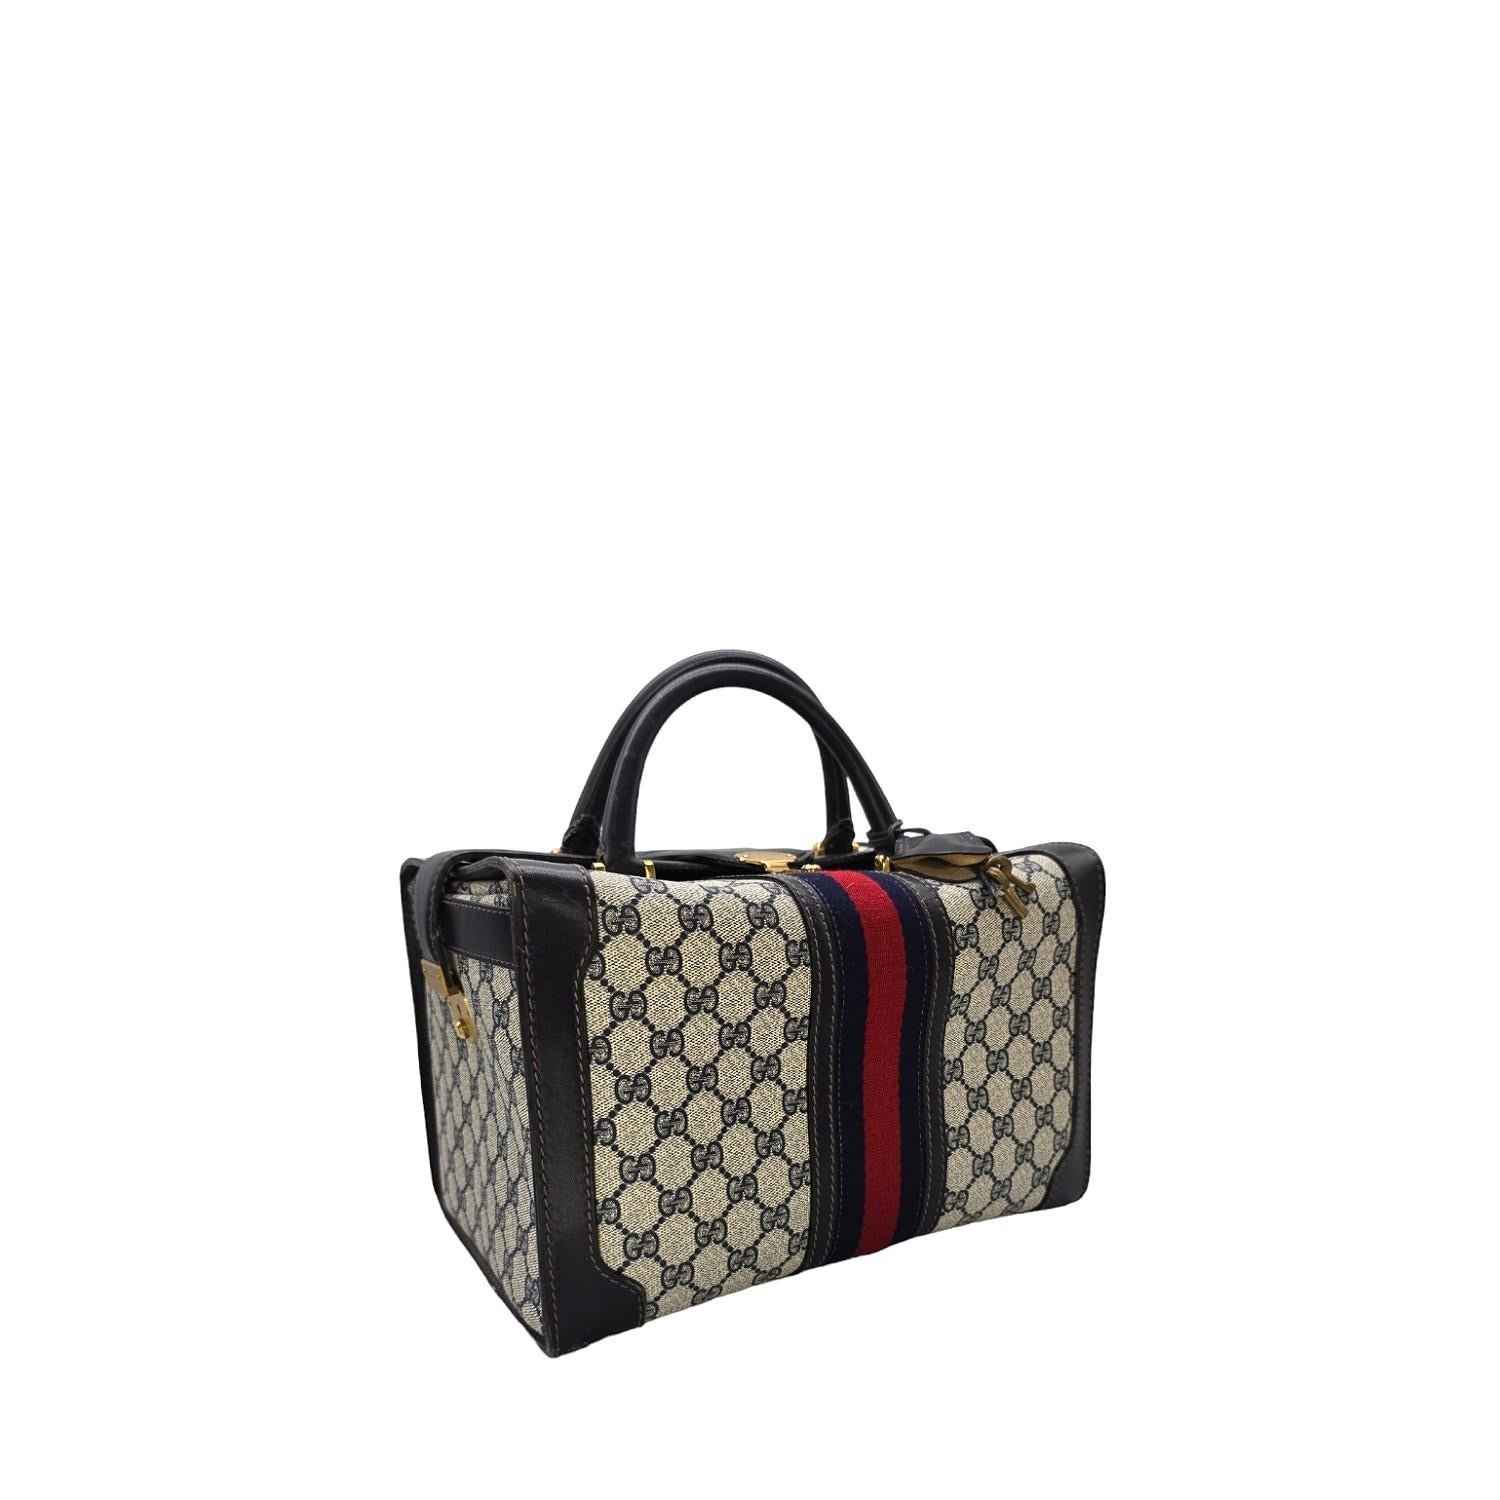 Offrez-vous le luxe avec le rare sac de voyage Vintage Gucci à 3 serrures. Chic et sophistiqué, il peut également faire office de sac à main. La clochette en cuir et les clés en laiton ajoutent une touche d'élégance, tandis que l'intérieur doublé de